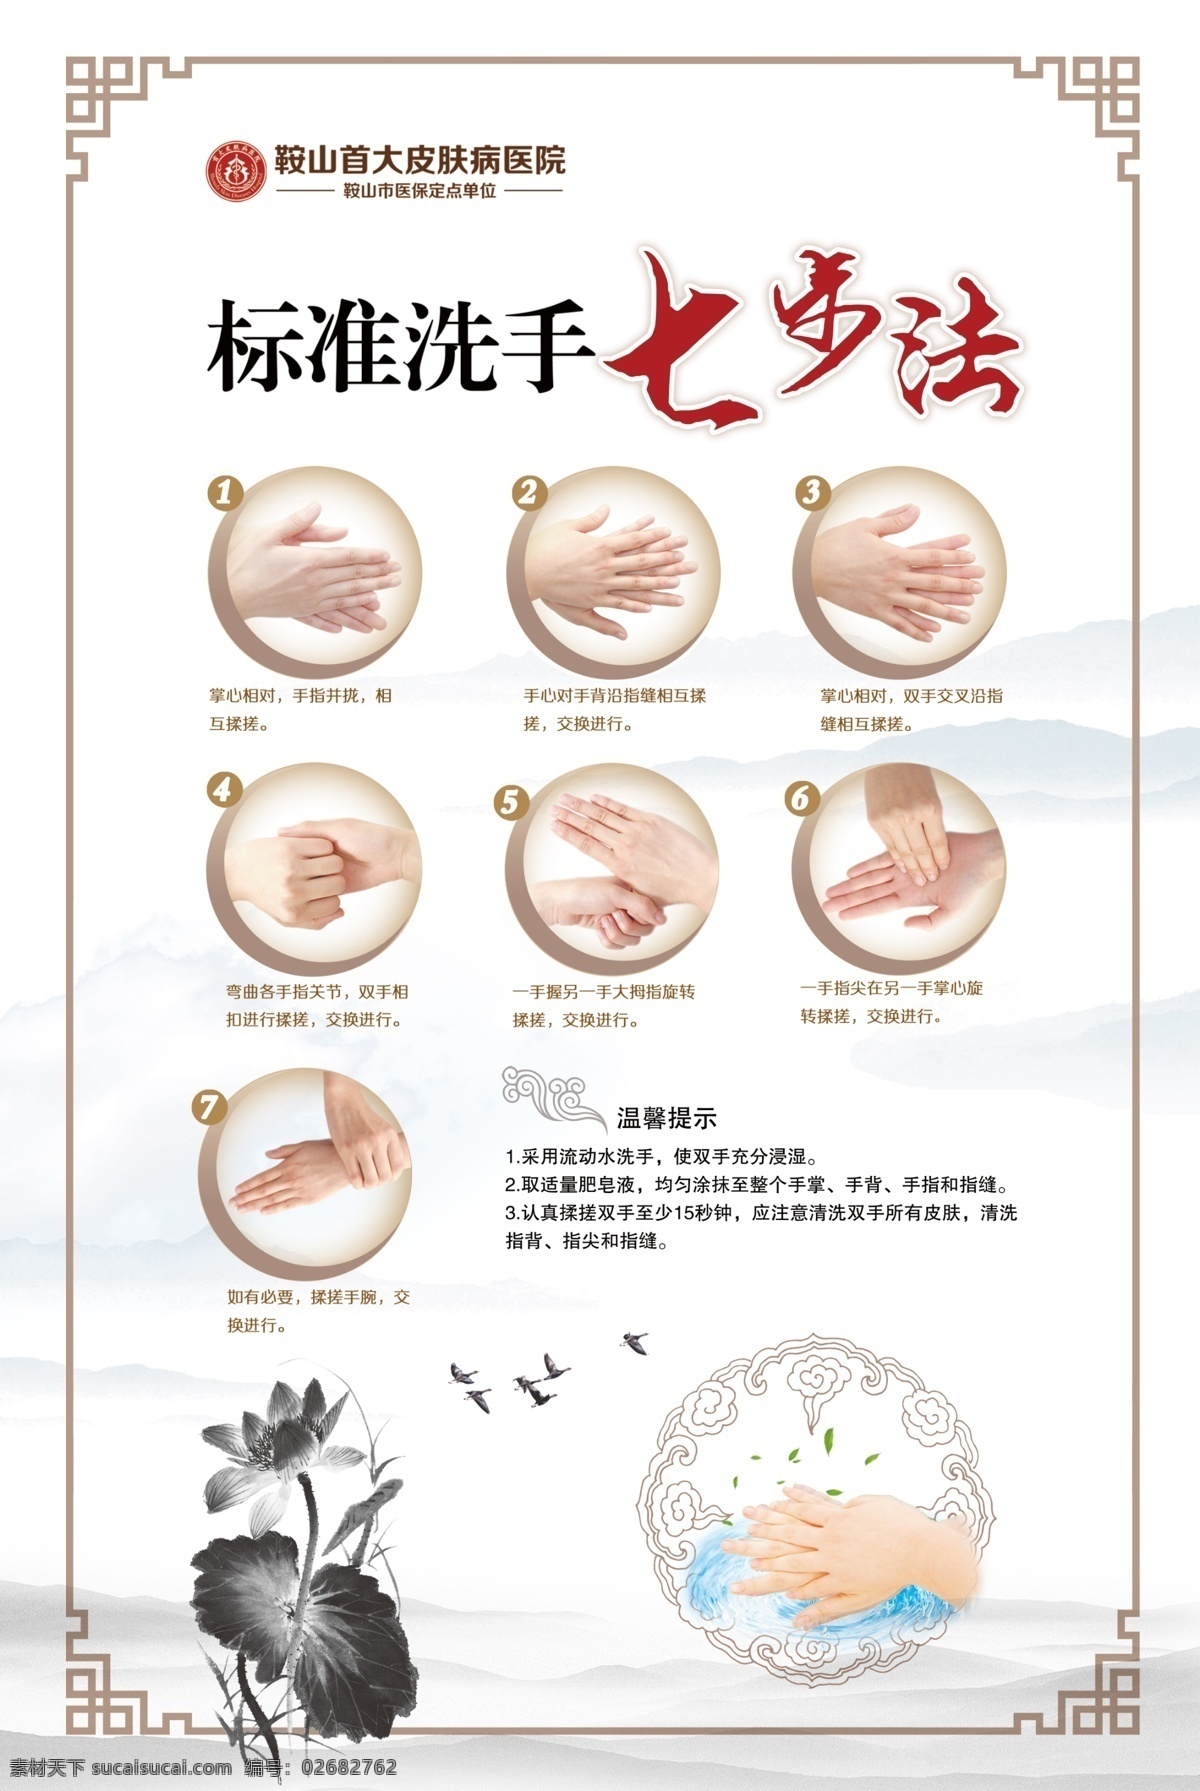 医院宣传图片 医院 医疗 海报 宣传 标准洗手 七步法 中国风 边框 画框